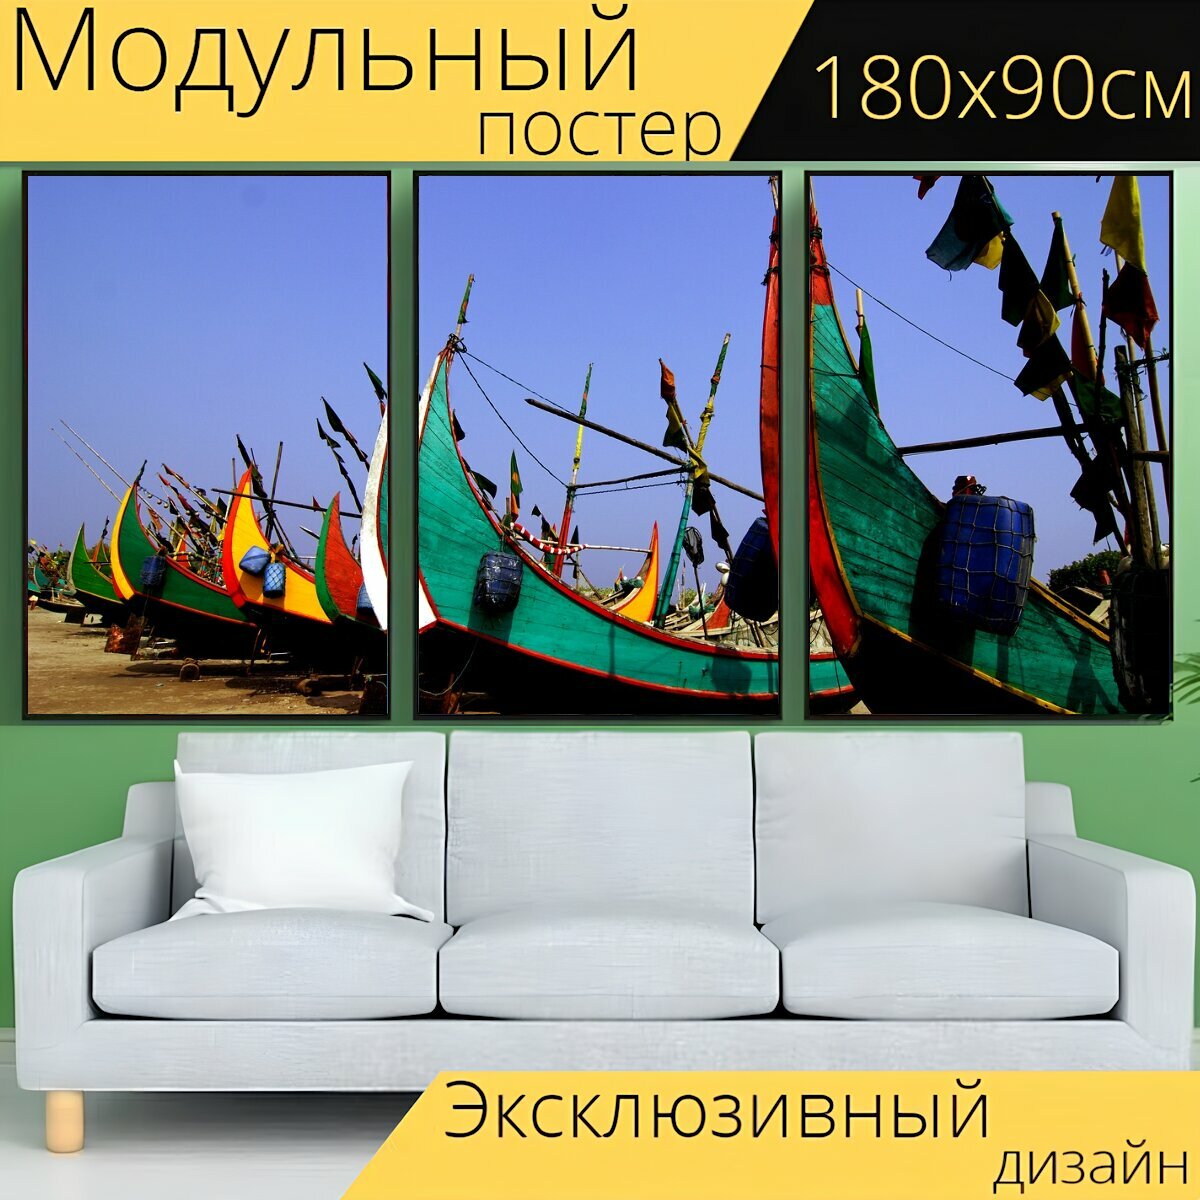 Модульный постер "Бангладеш, рыбак, лодка" 180 x 90 см. для интерьера